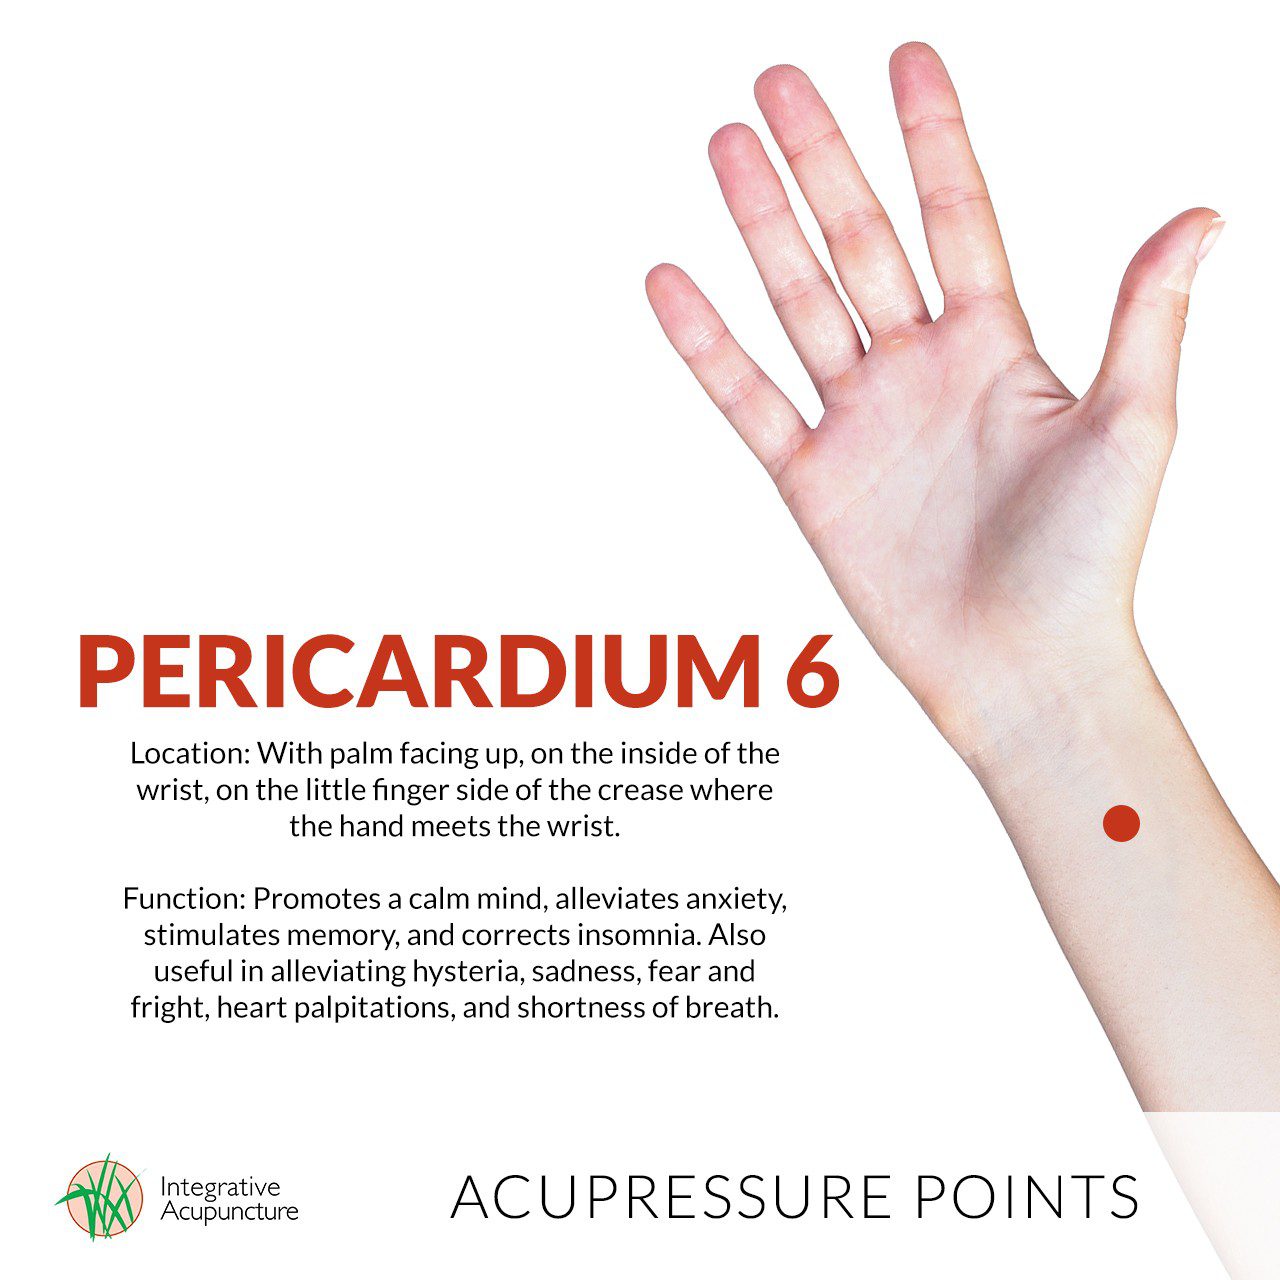 PC6 pericardium 6